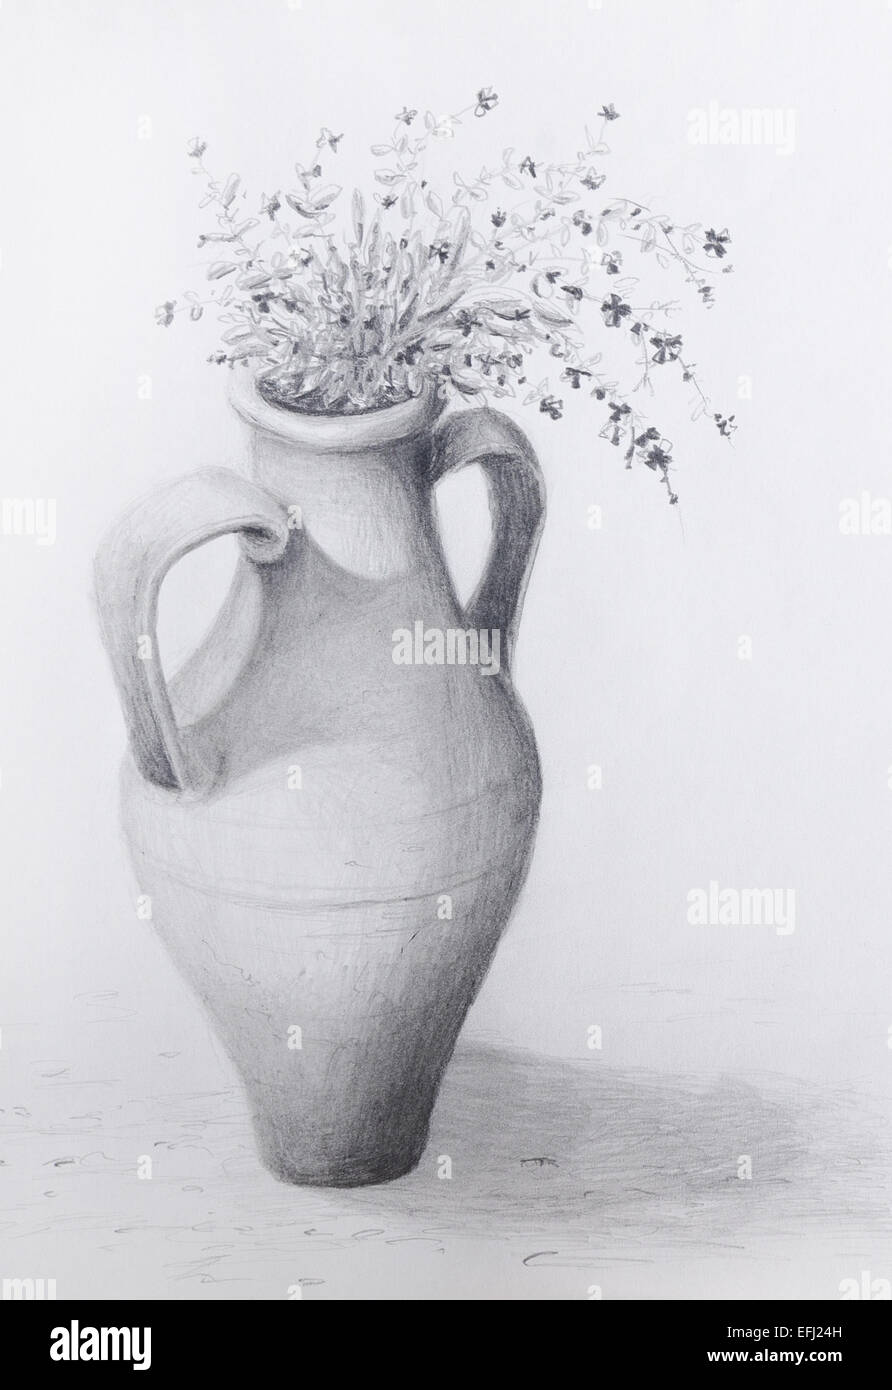 Bleistiftzeichnung von einer Vintage Amphora mit Blumen wachsen aus ihm heraus - Graustufen auf Patrone Papier. Stockfoto